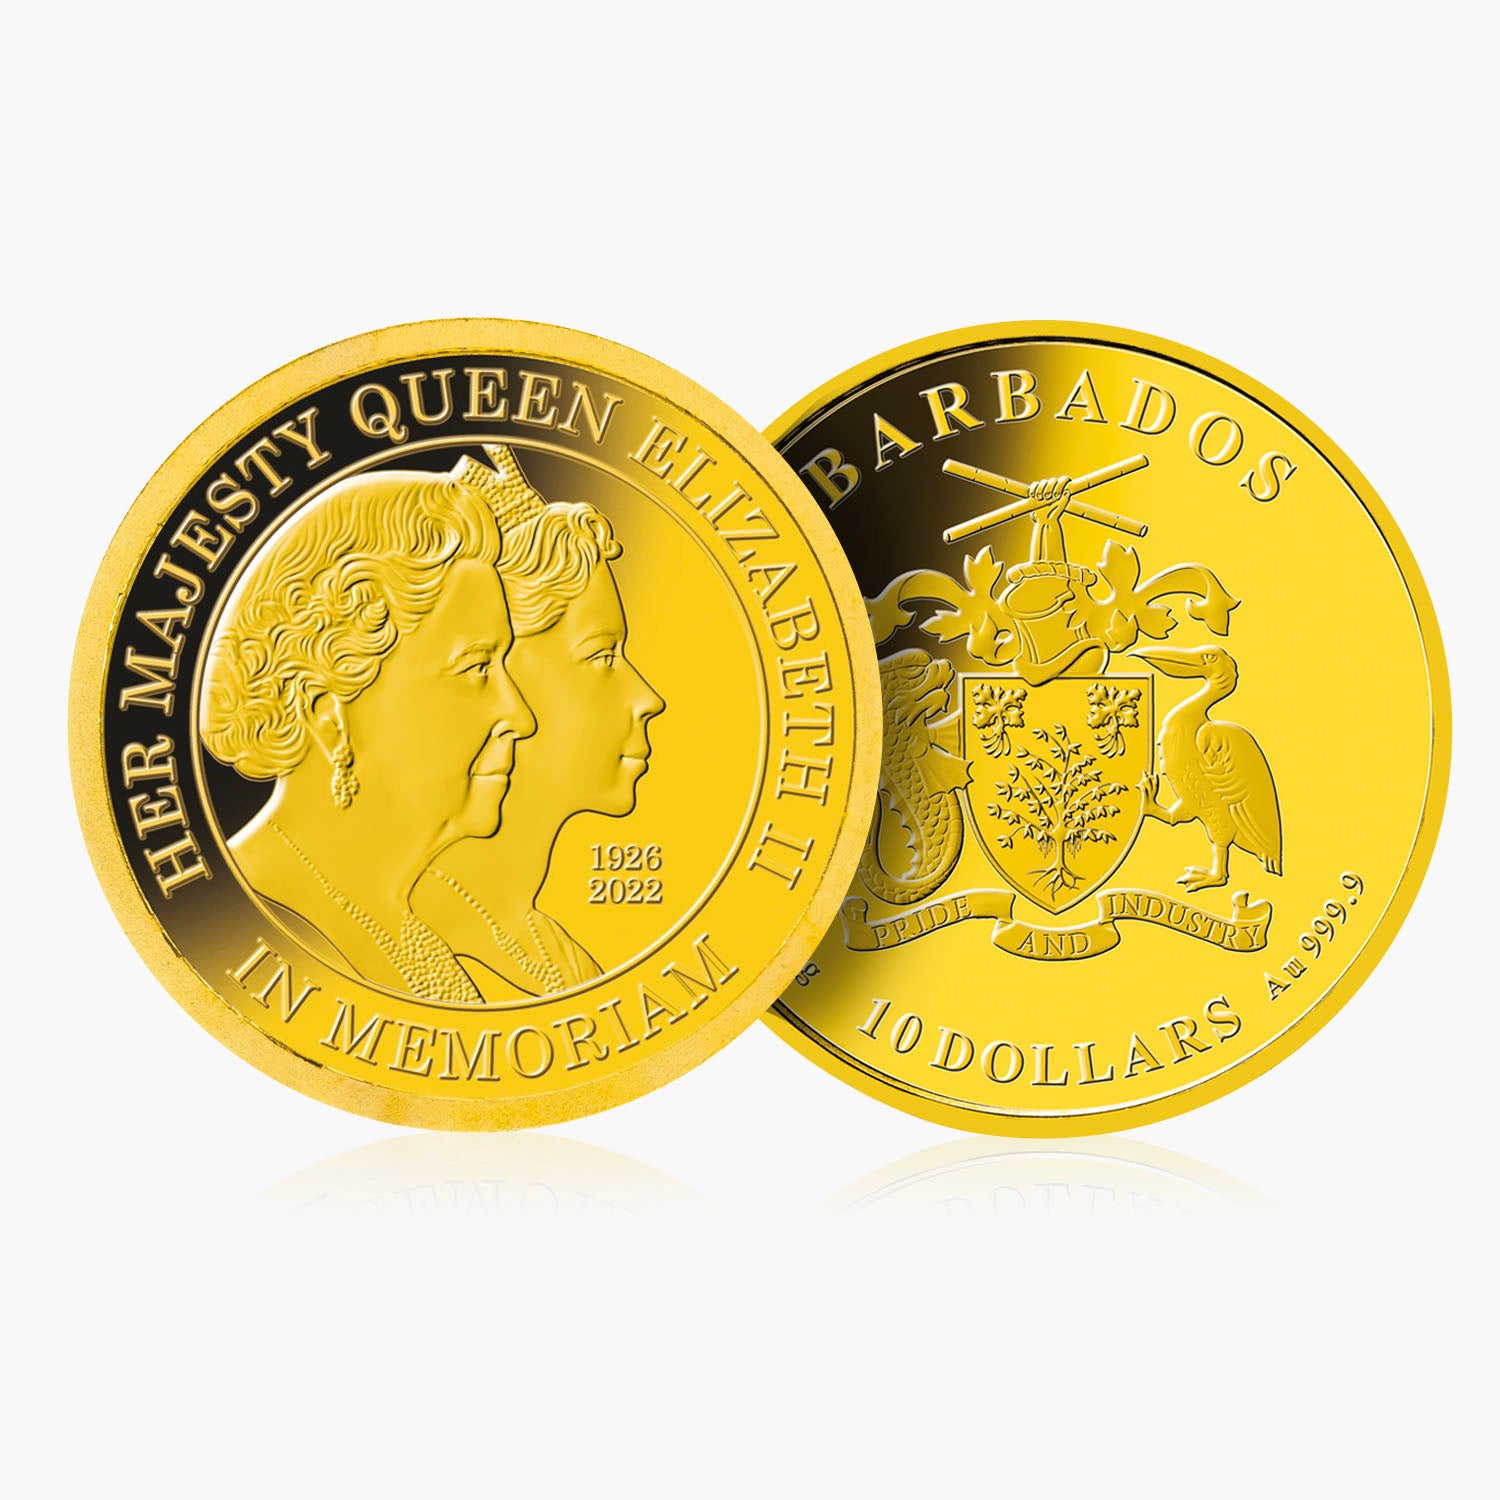 Queen Elizabeth II Double Portrait Solid Gold Coin